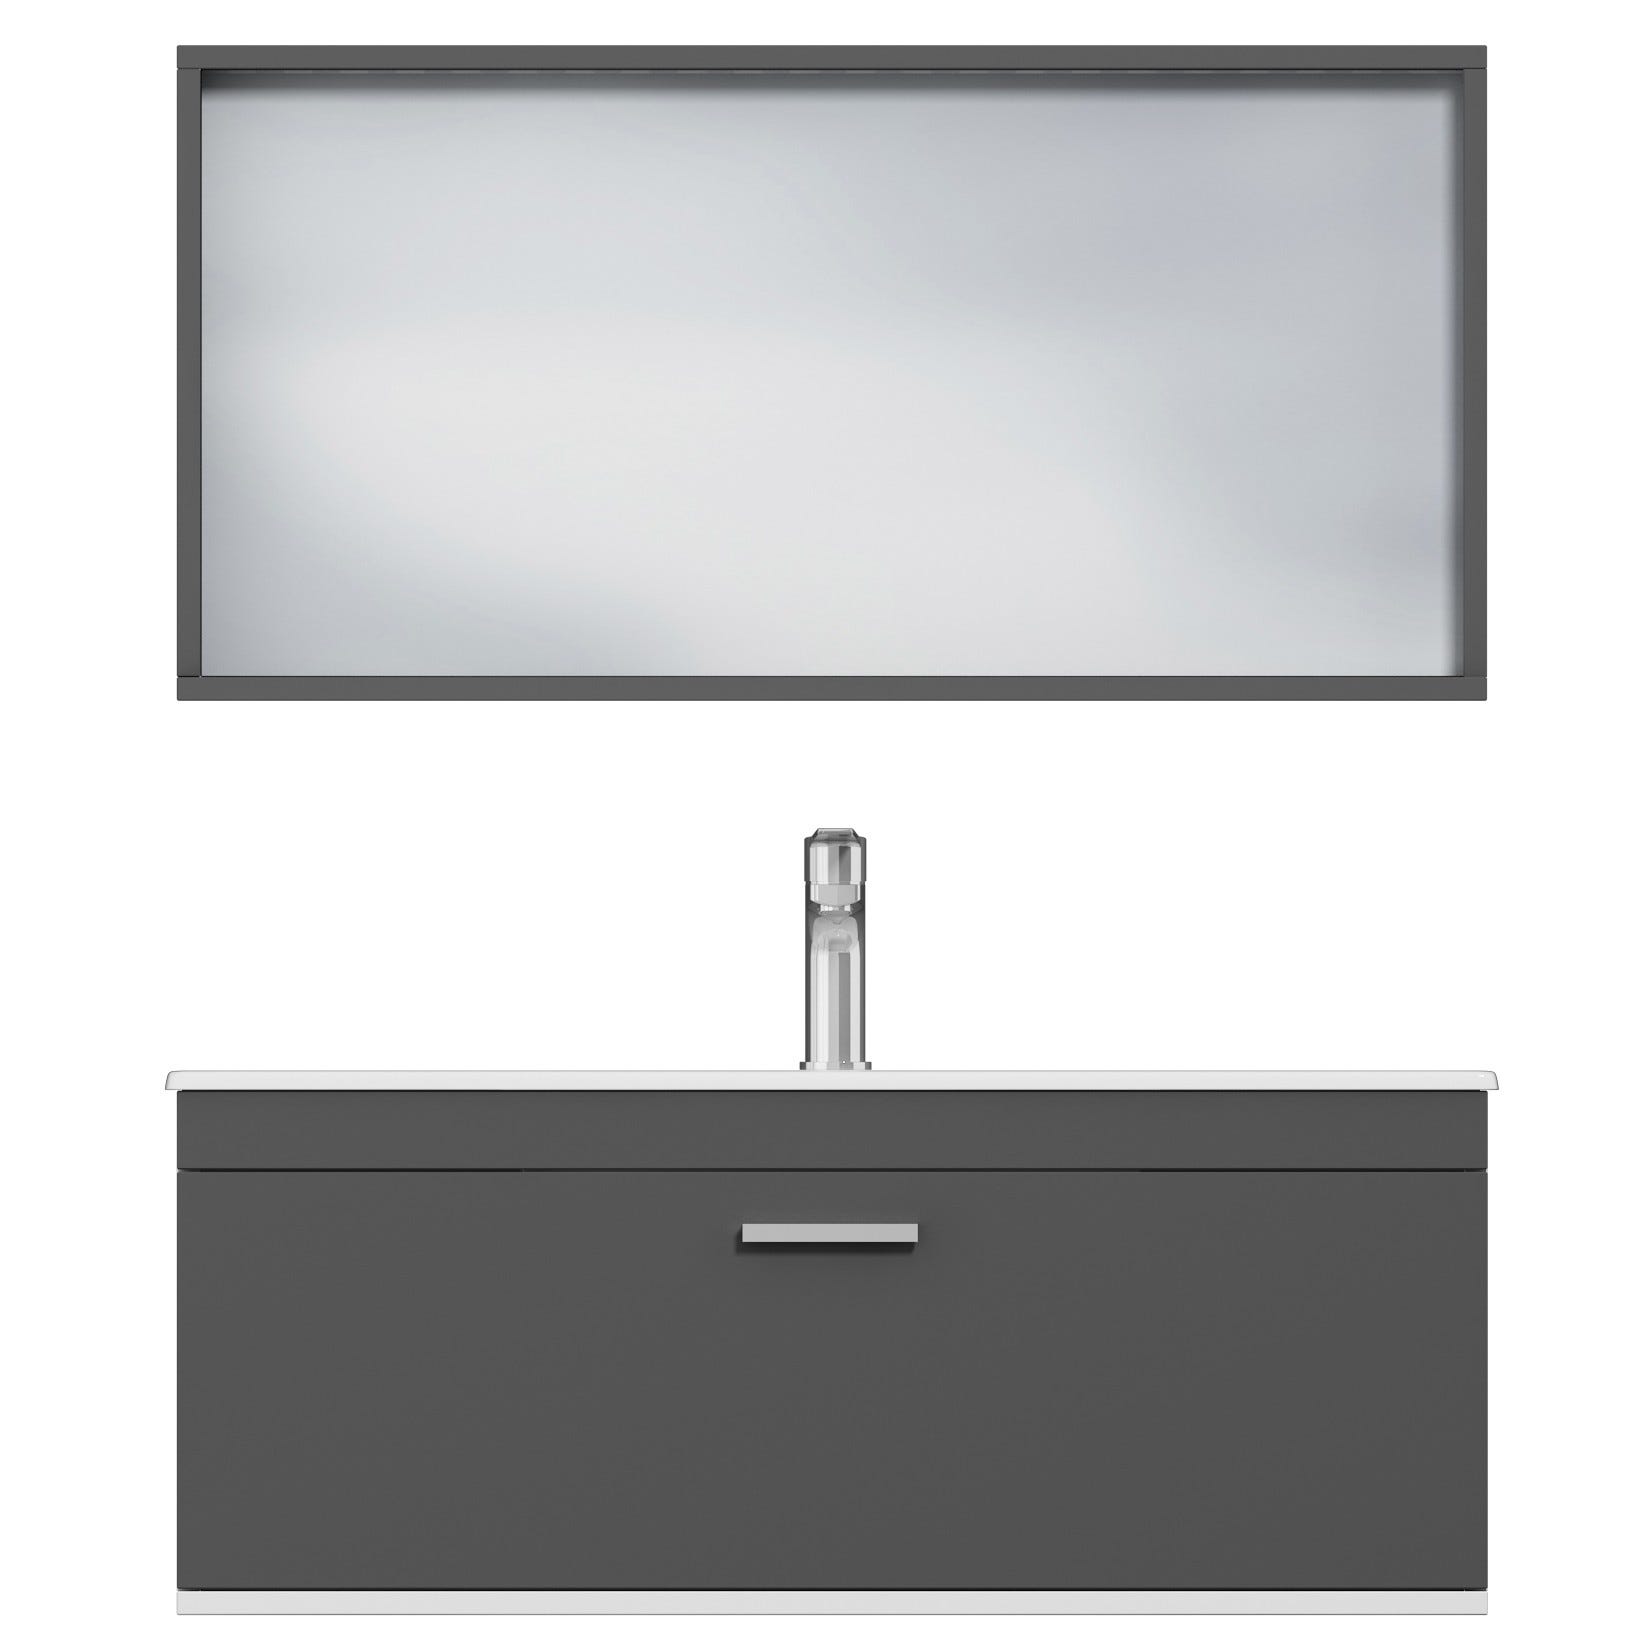 RUBITE Meuble salle de bain simple vasque 1 tiroir gris anthracite largeur 100 cm + miroir cadre 4